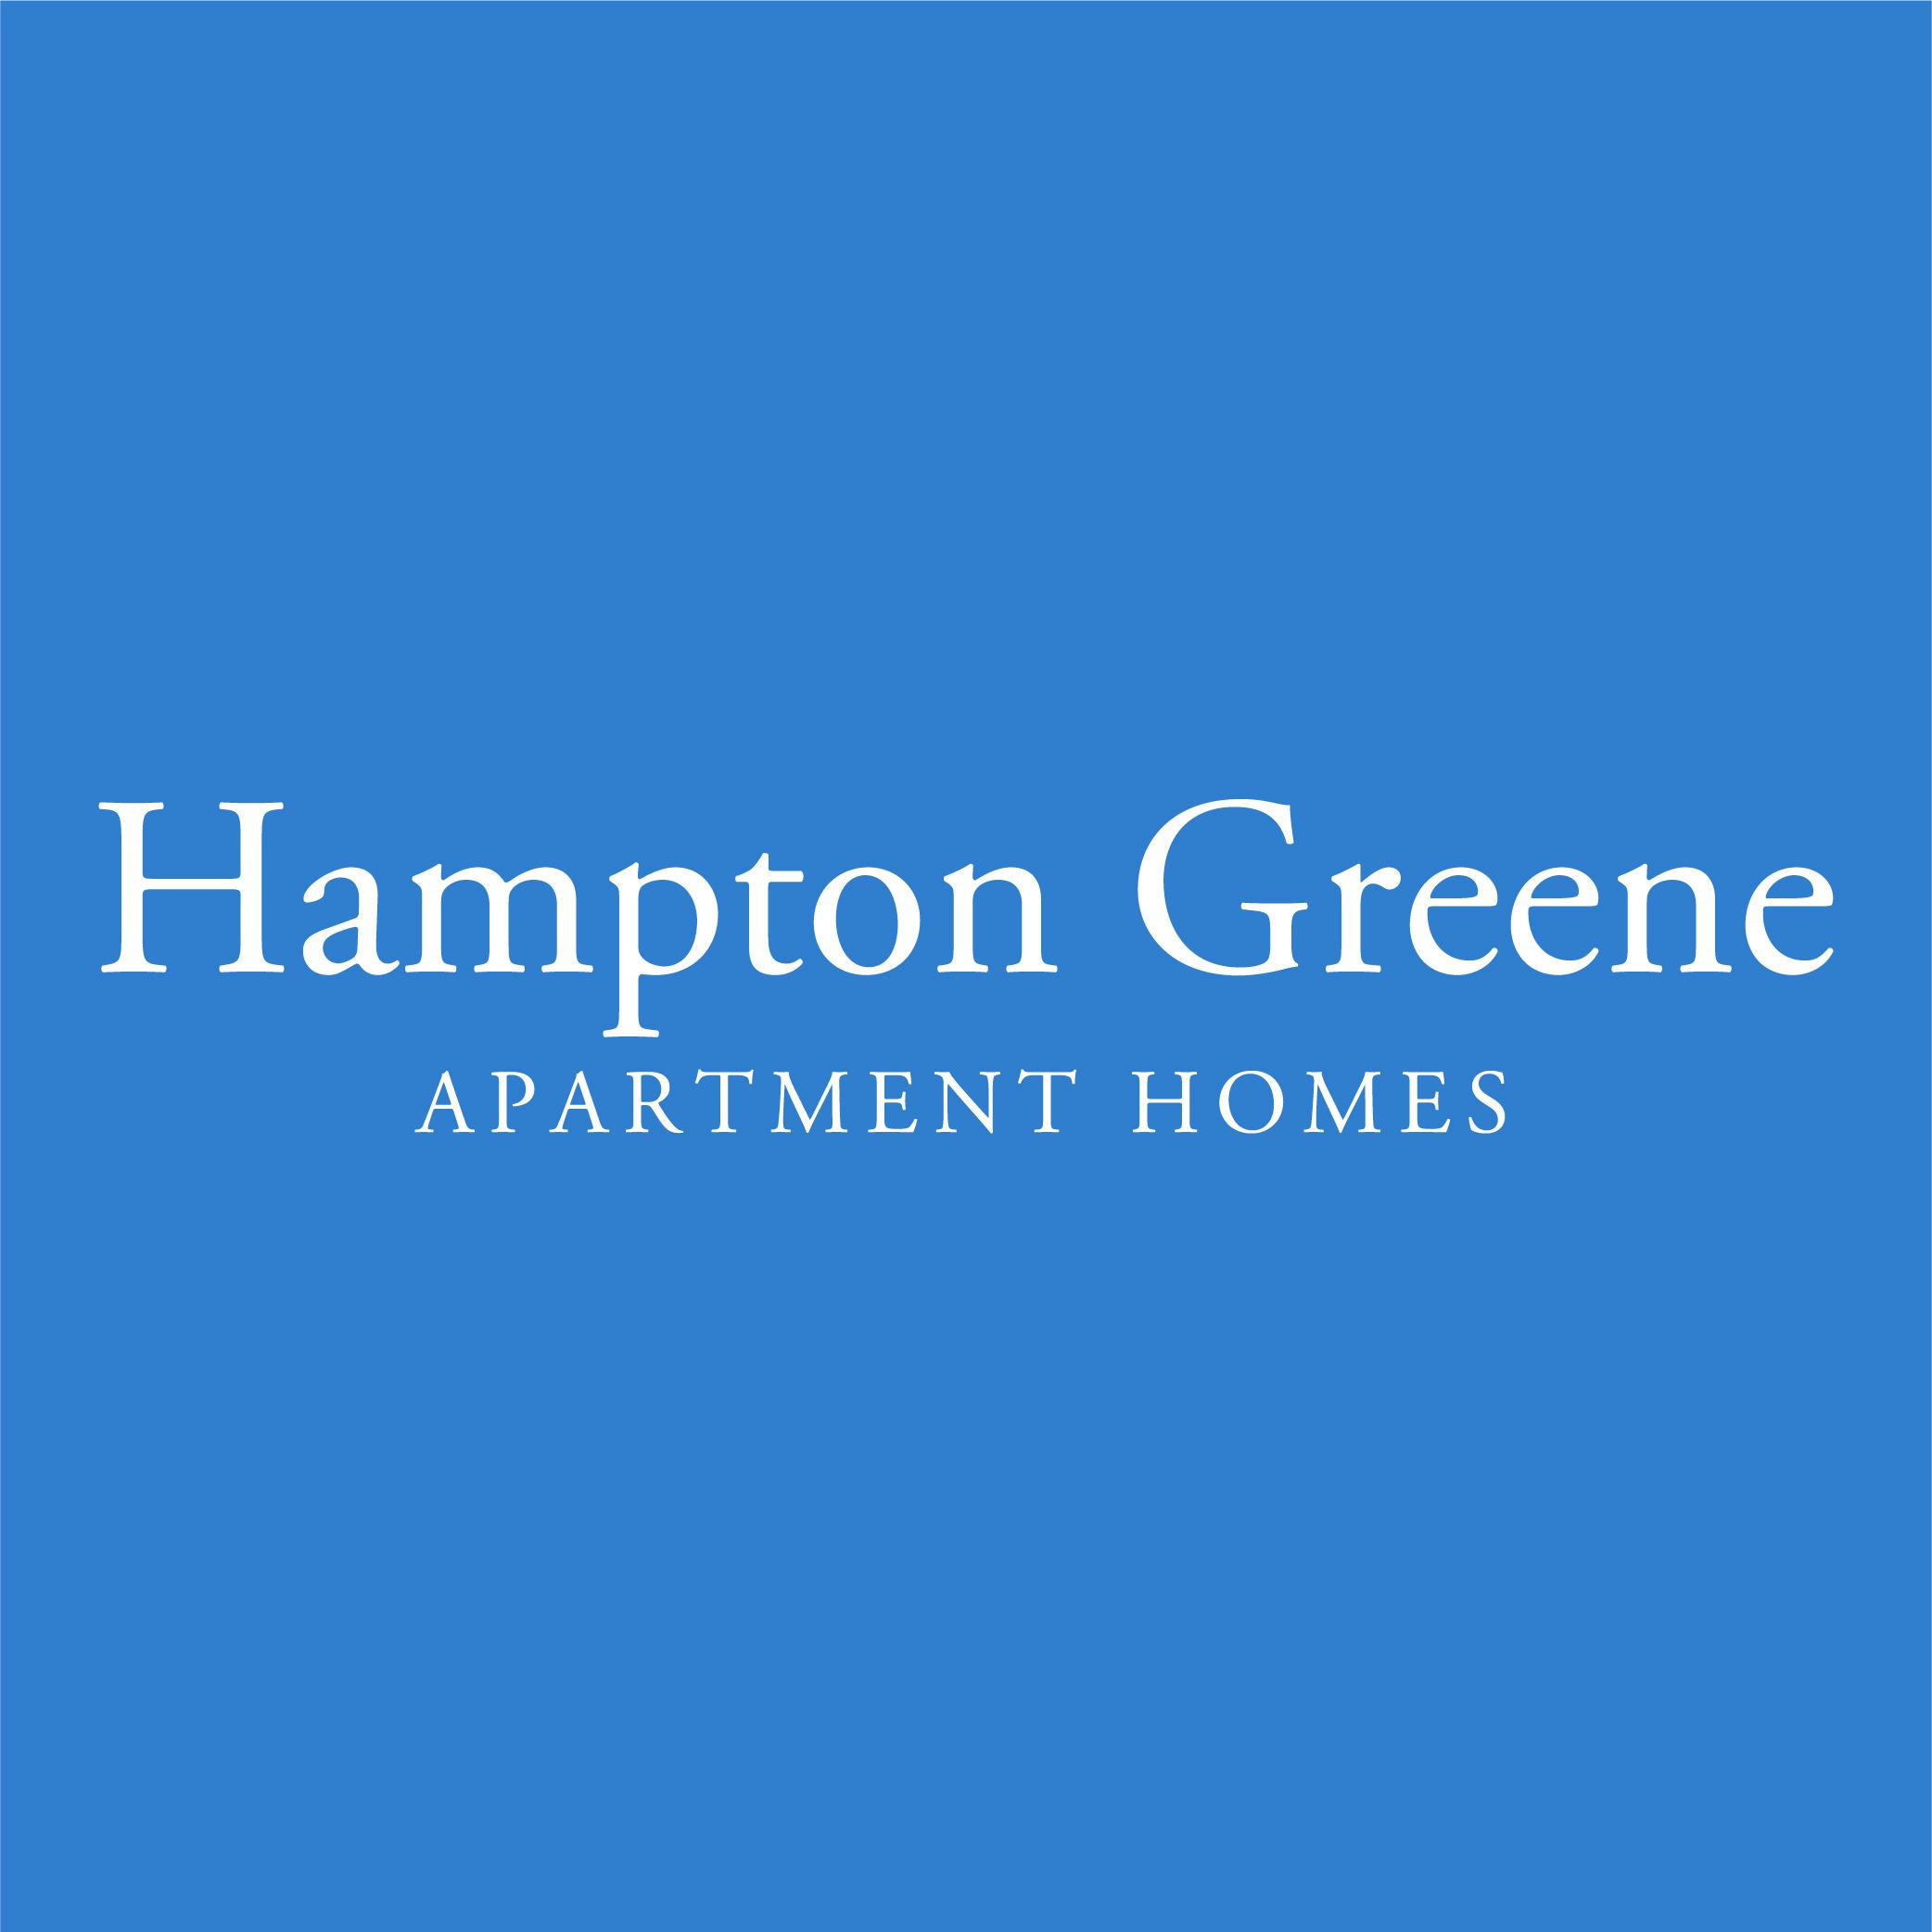 Hampton Greene Apartment Homes